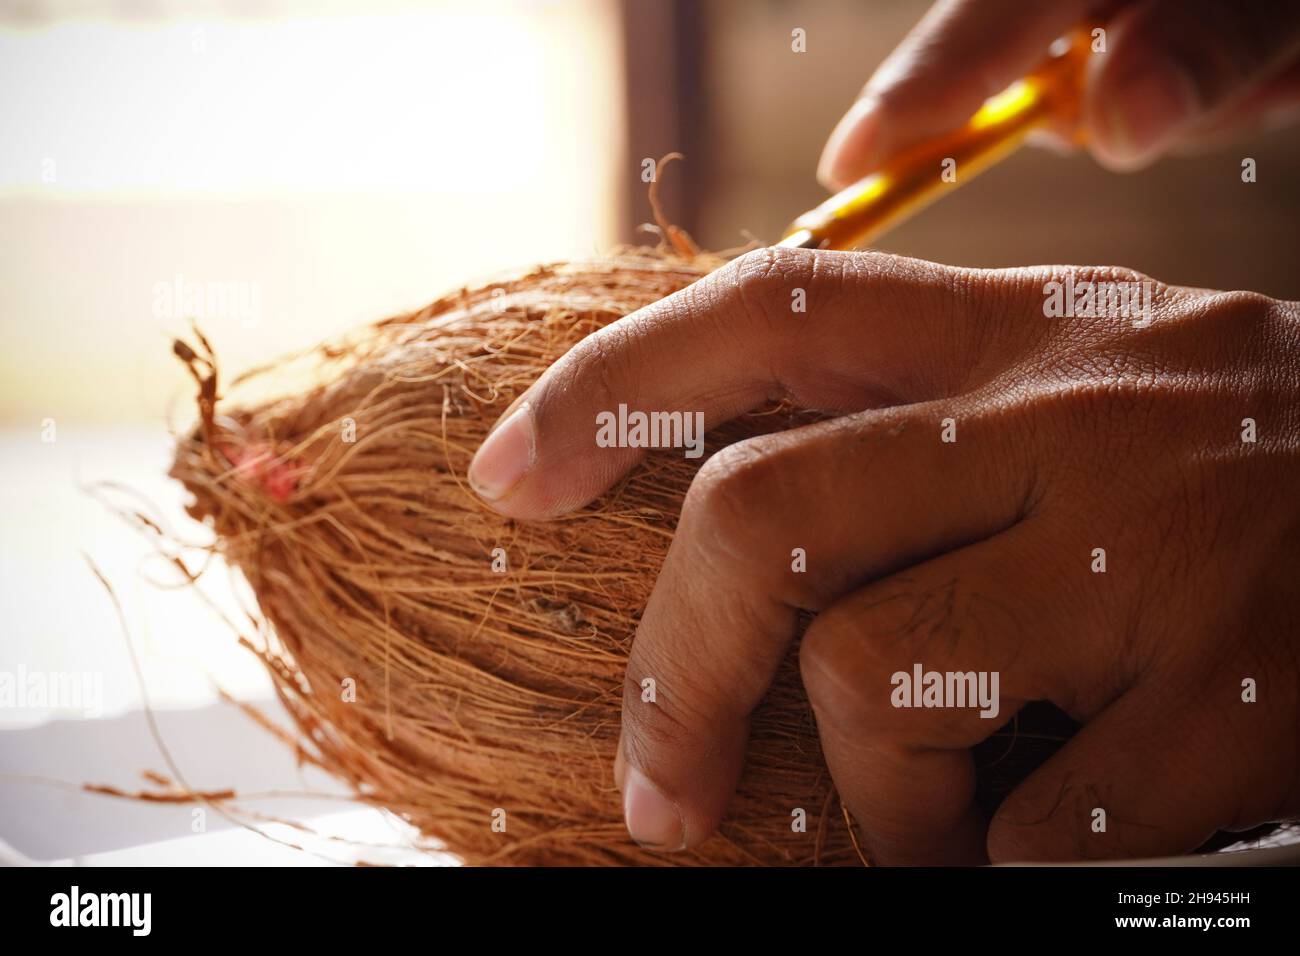 hombre peeling coco de la mano imagen de interior disparar Foto de stock